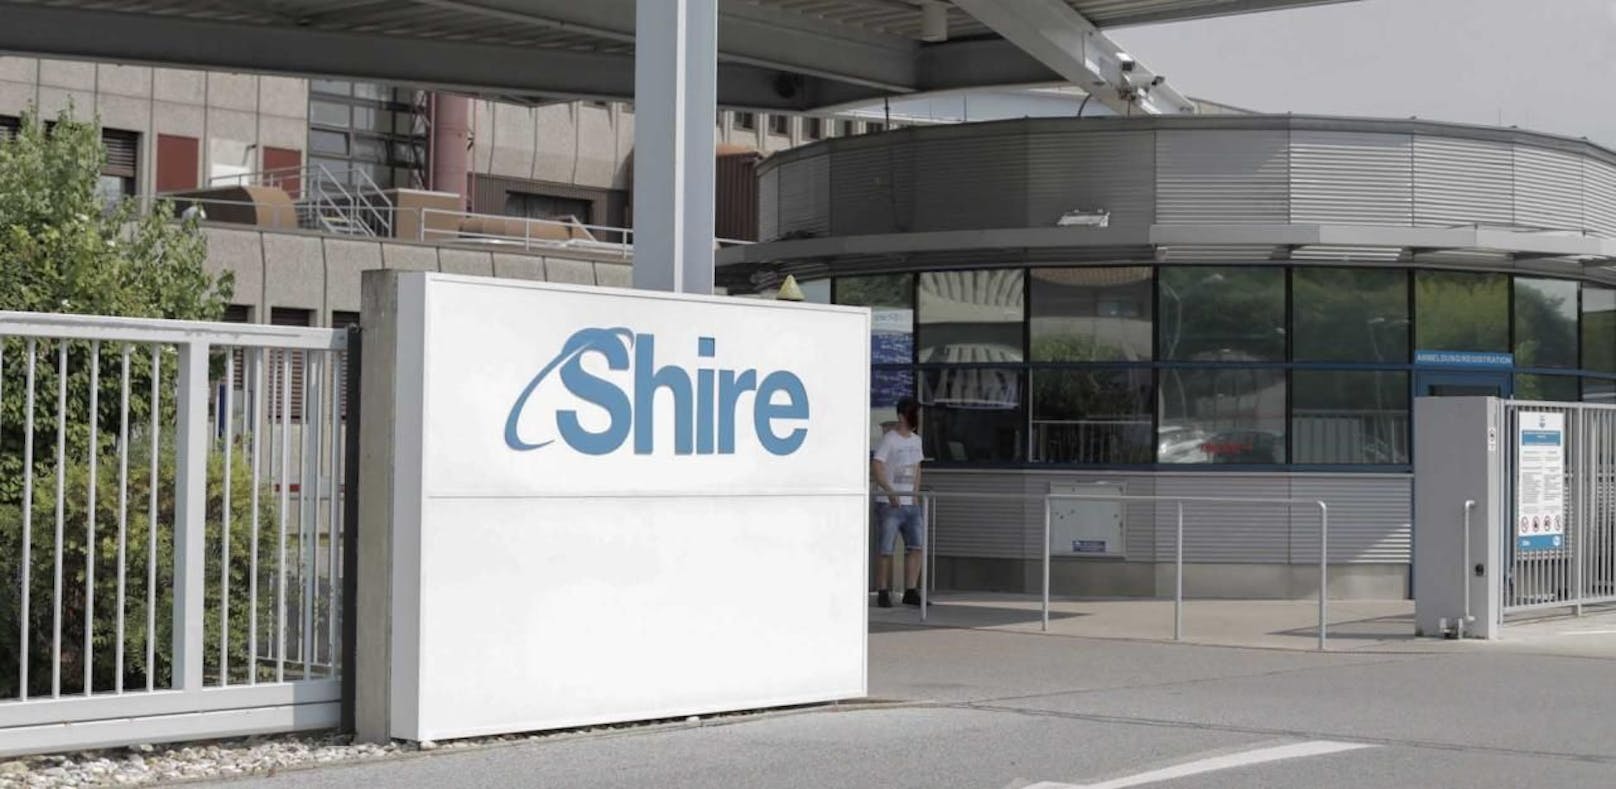 Shire-Standort in Orth: Hunderte Mitarbeiter werden gekündigt.